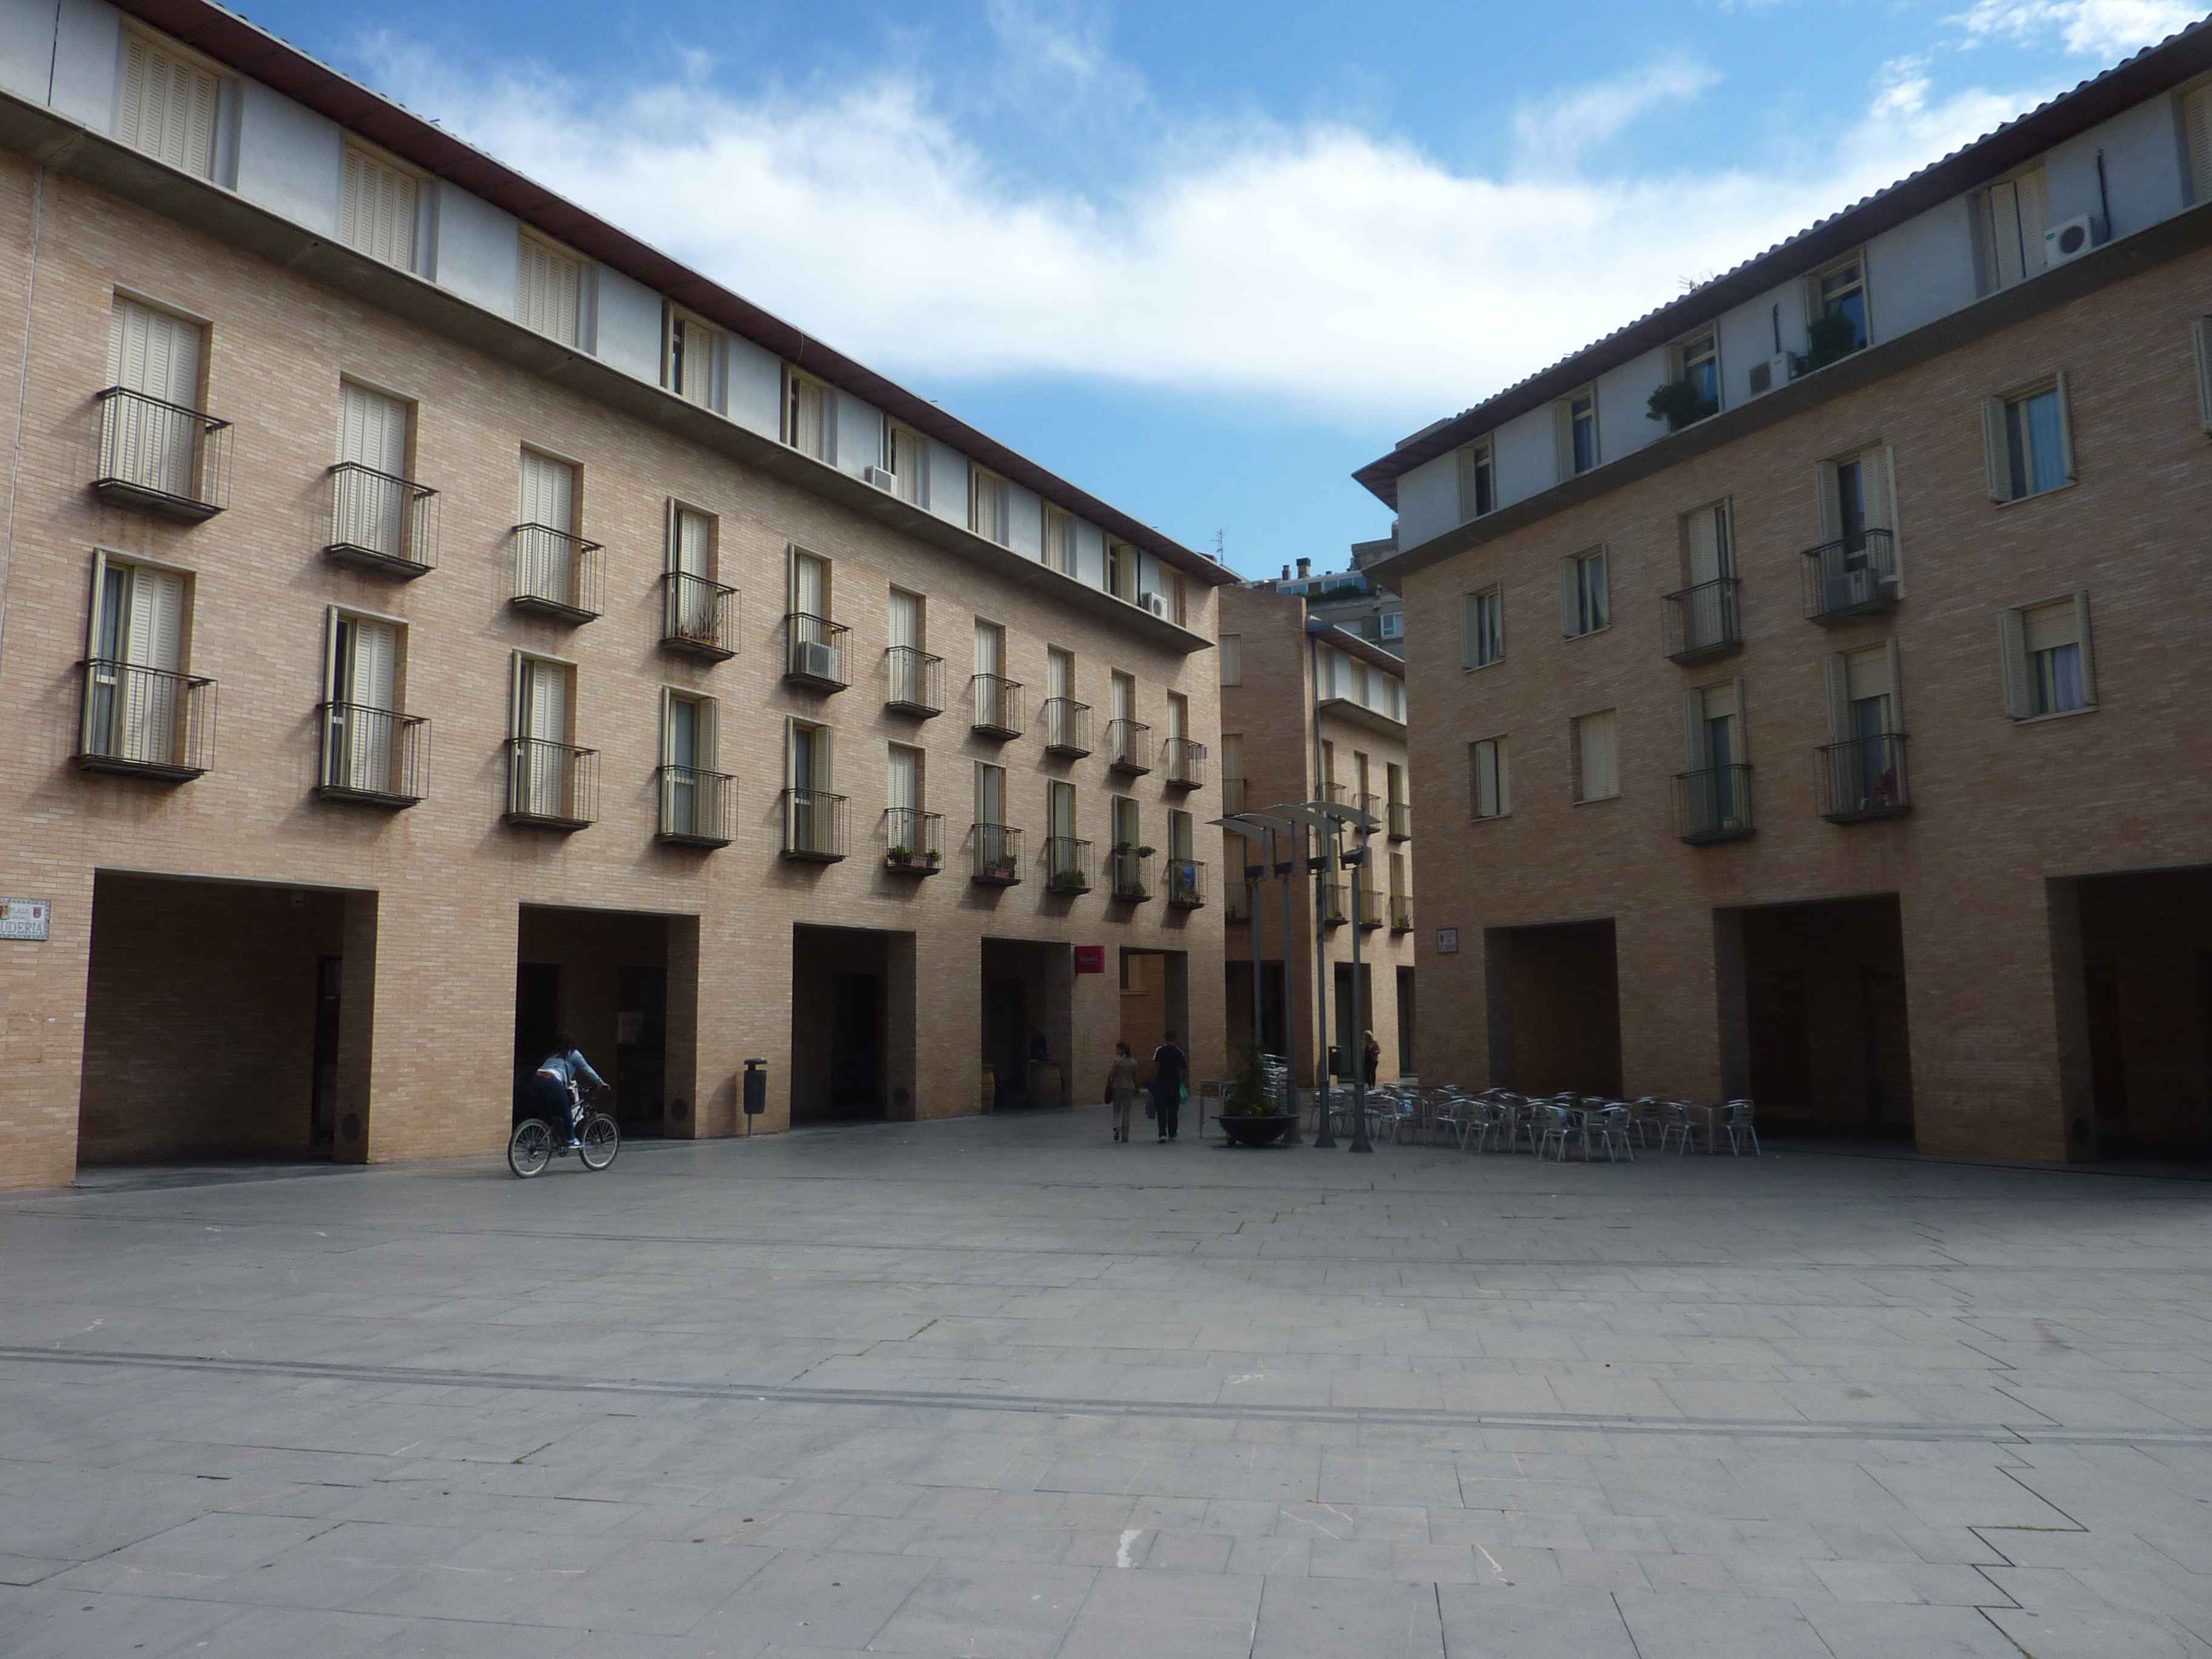 Grande Place Renovee De Tudela en Images